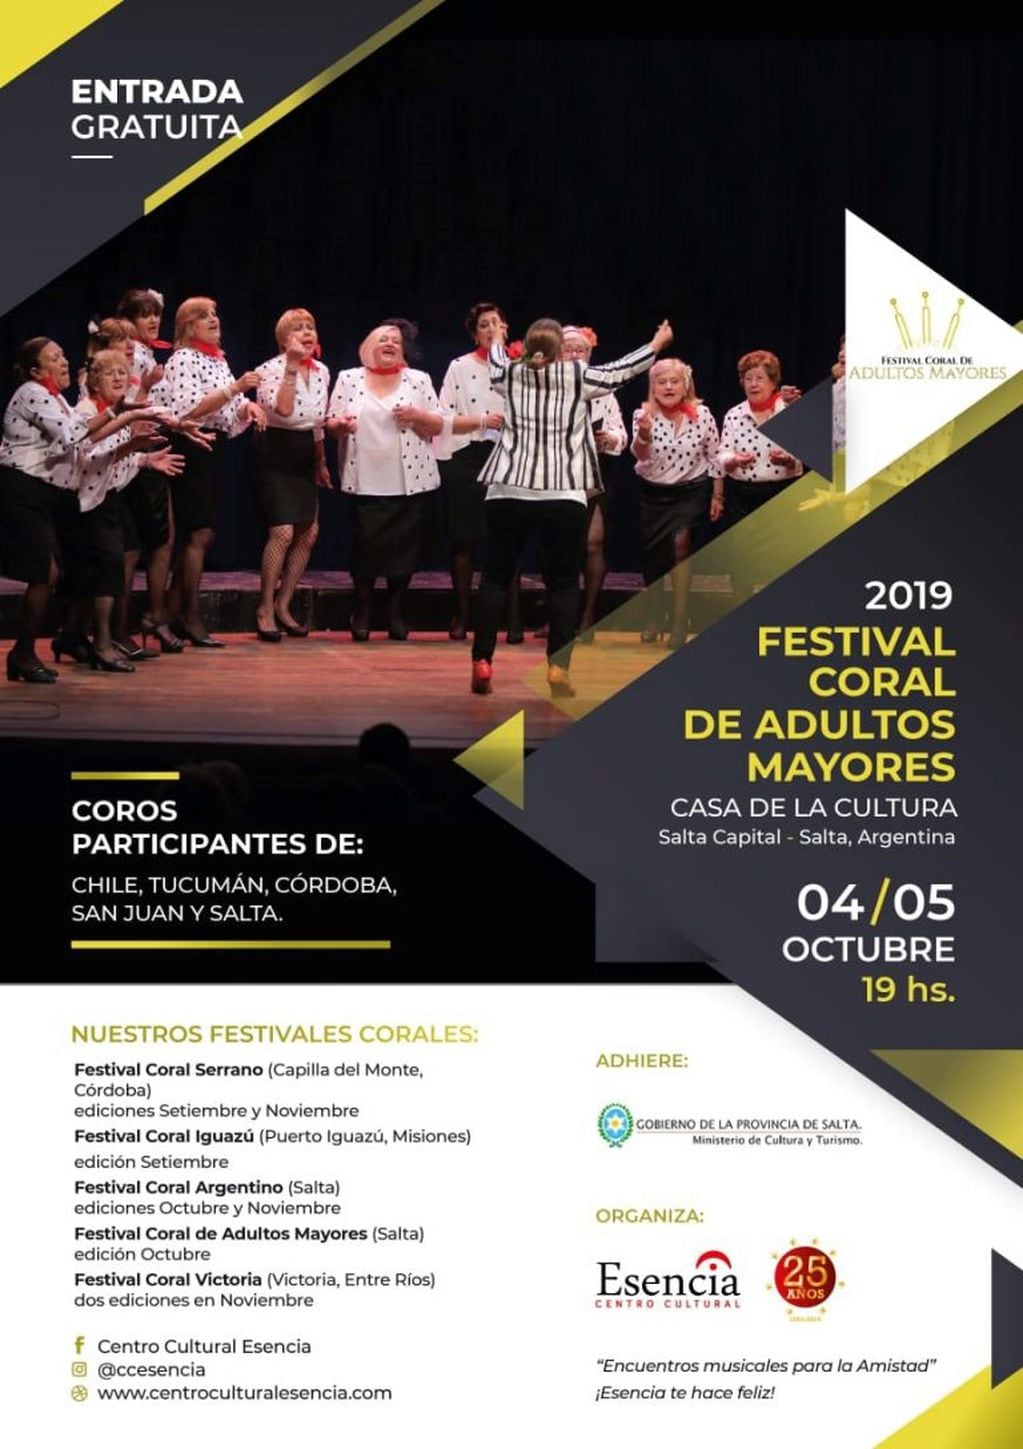 Festival Coral de Adultos Mayores (Facebook Casa de la Cultura - Salta)